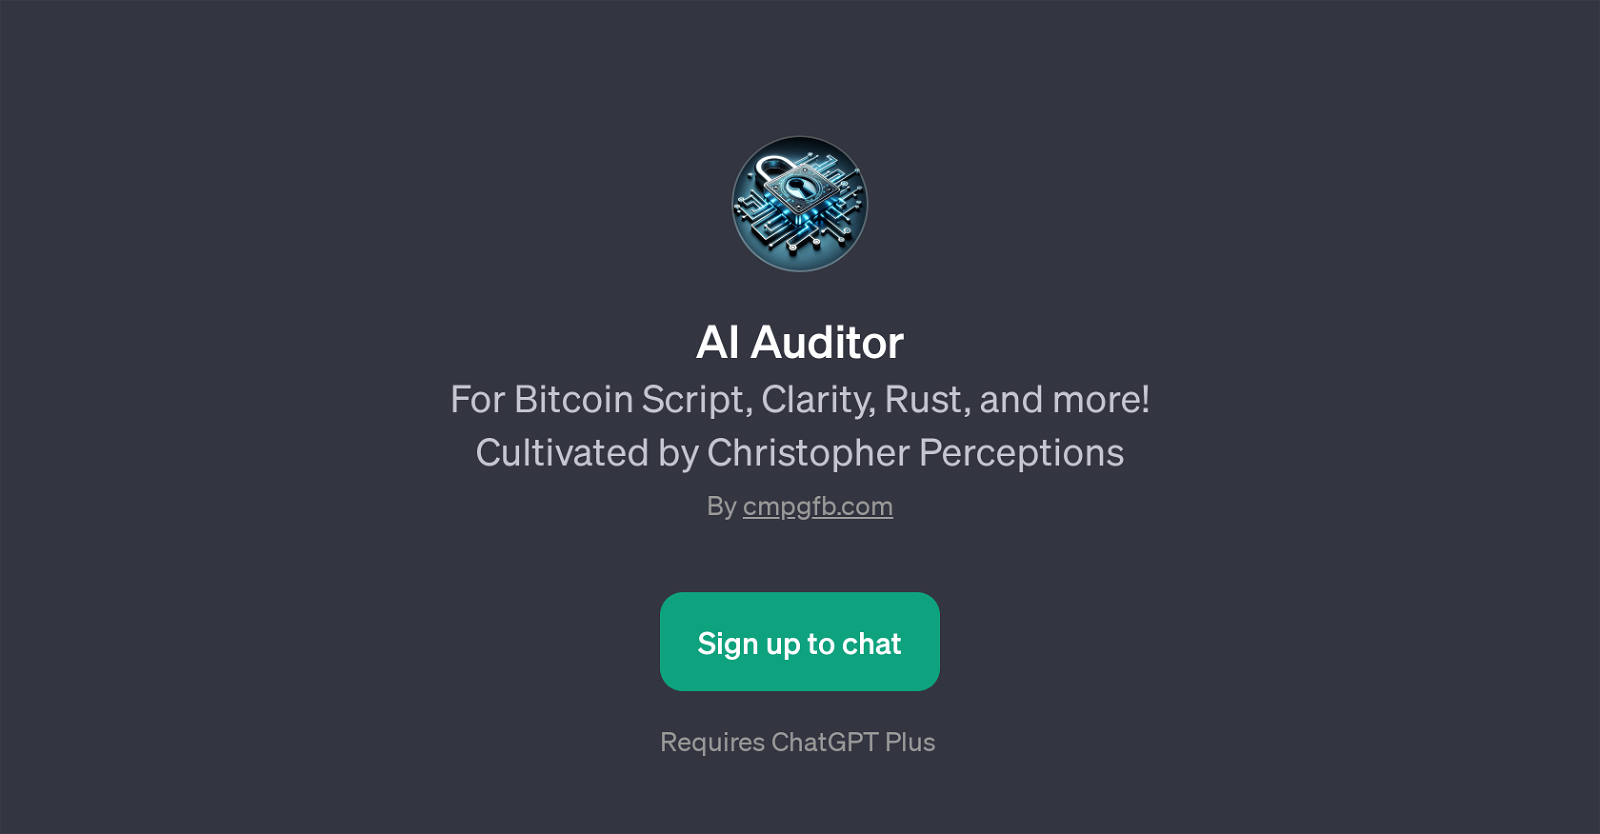 AI Auditor website